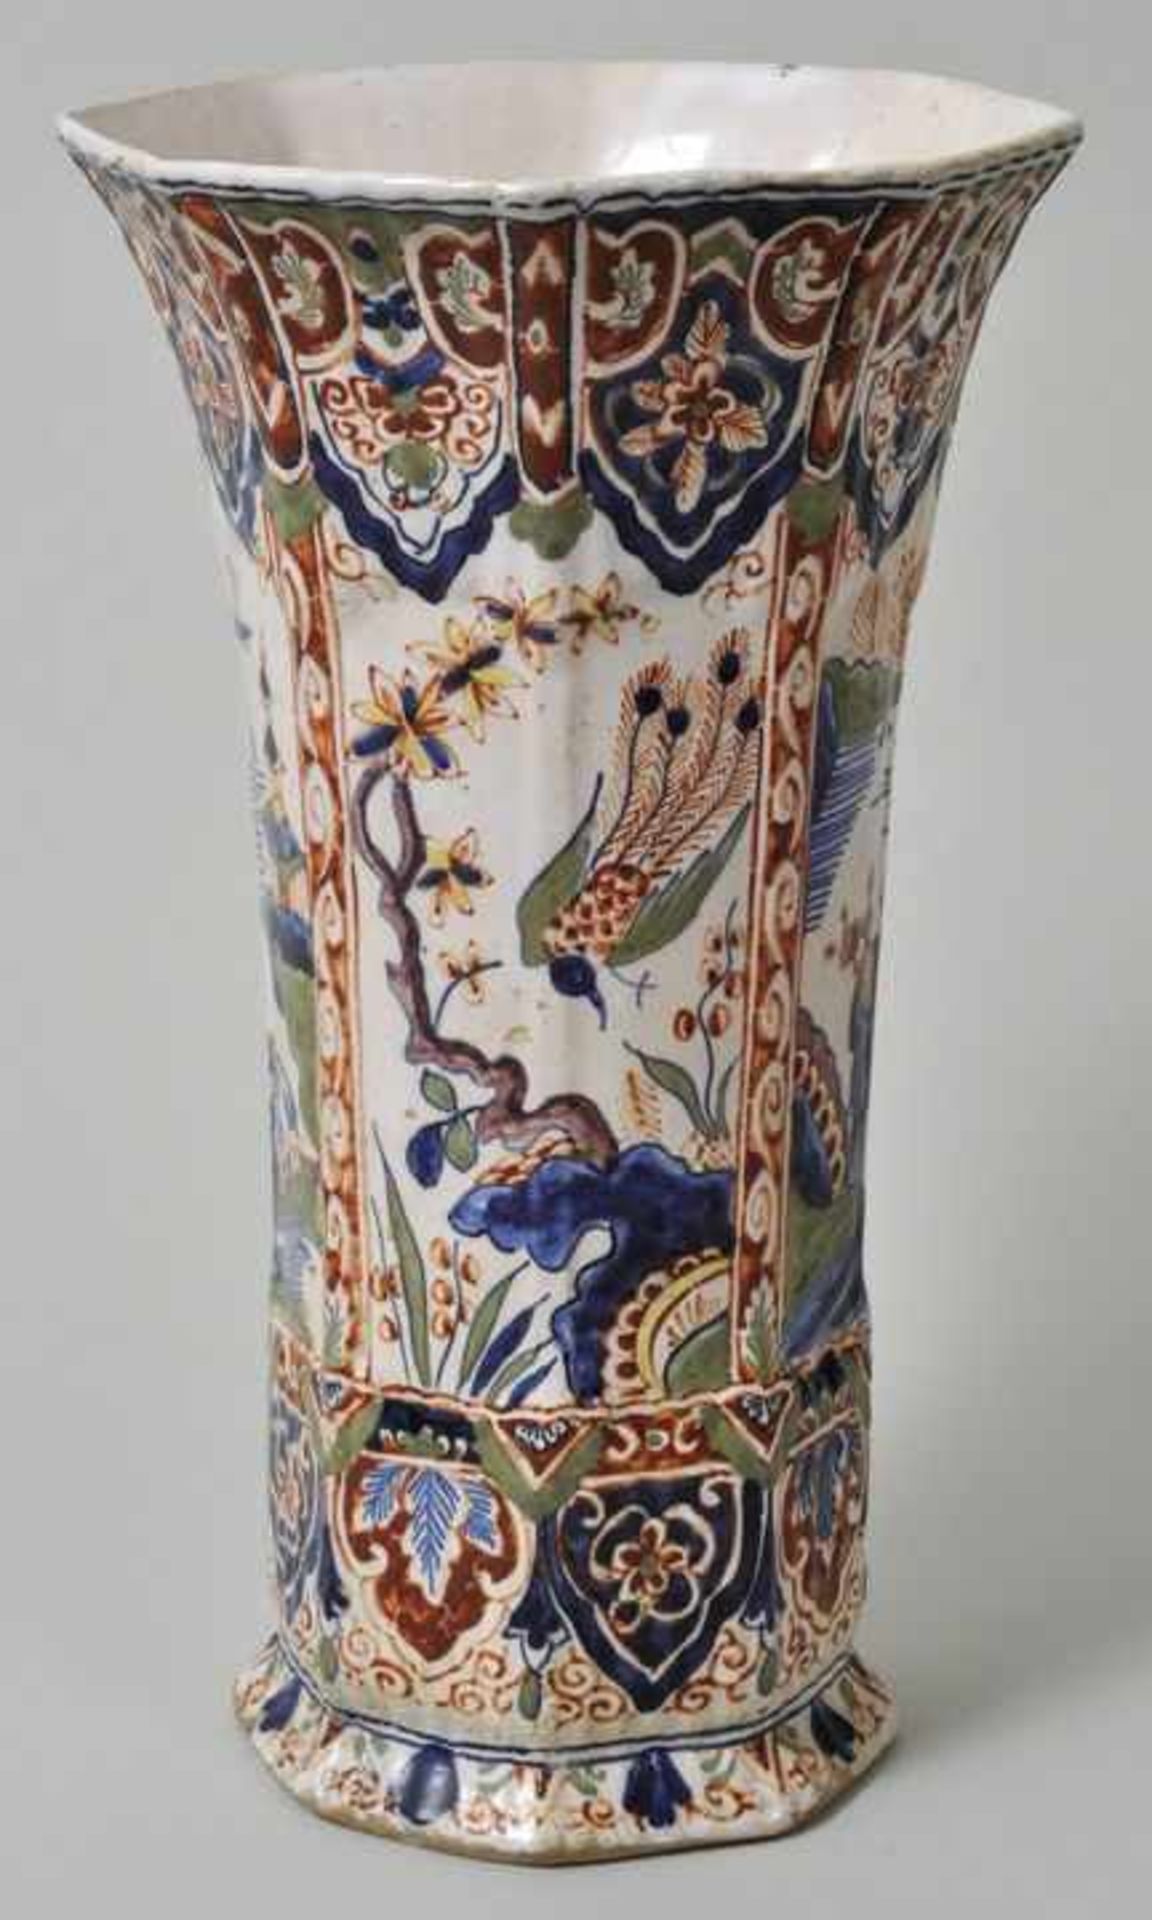 Vase, Delft, um 1700 Fayence, in Eisenrot, Grün, Gelb und Kobaltblau auf cremefarbener Glasur - Bild 3 aus 4